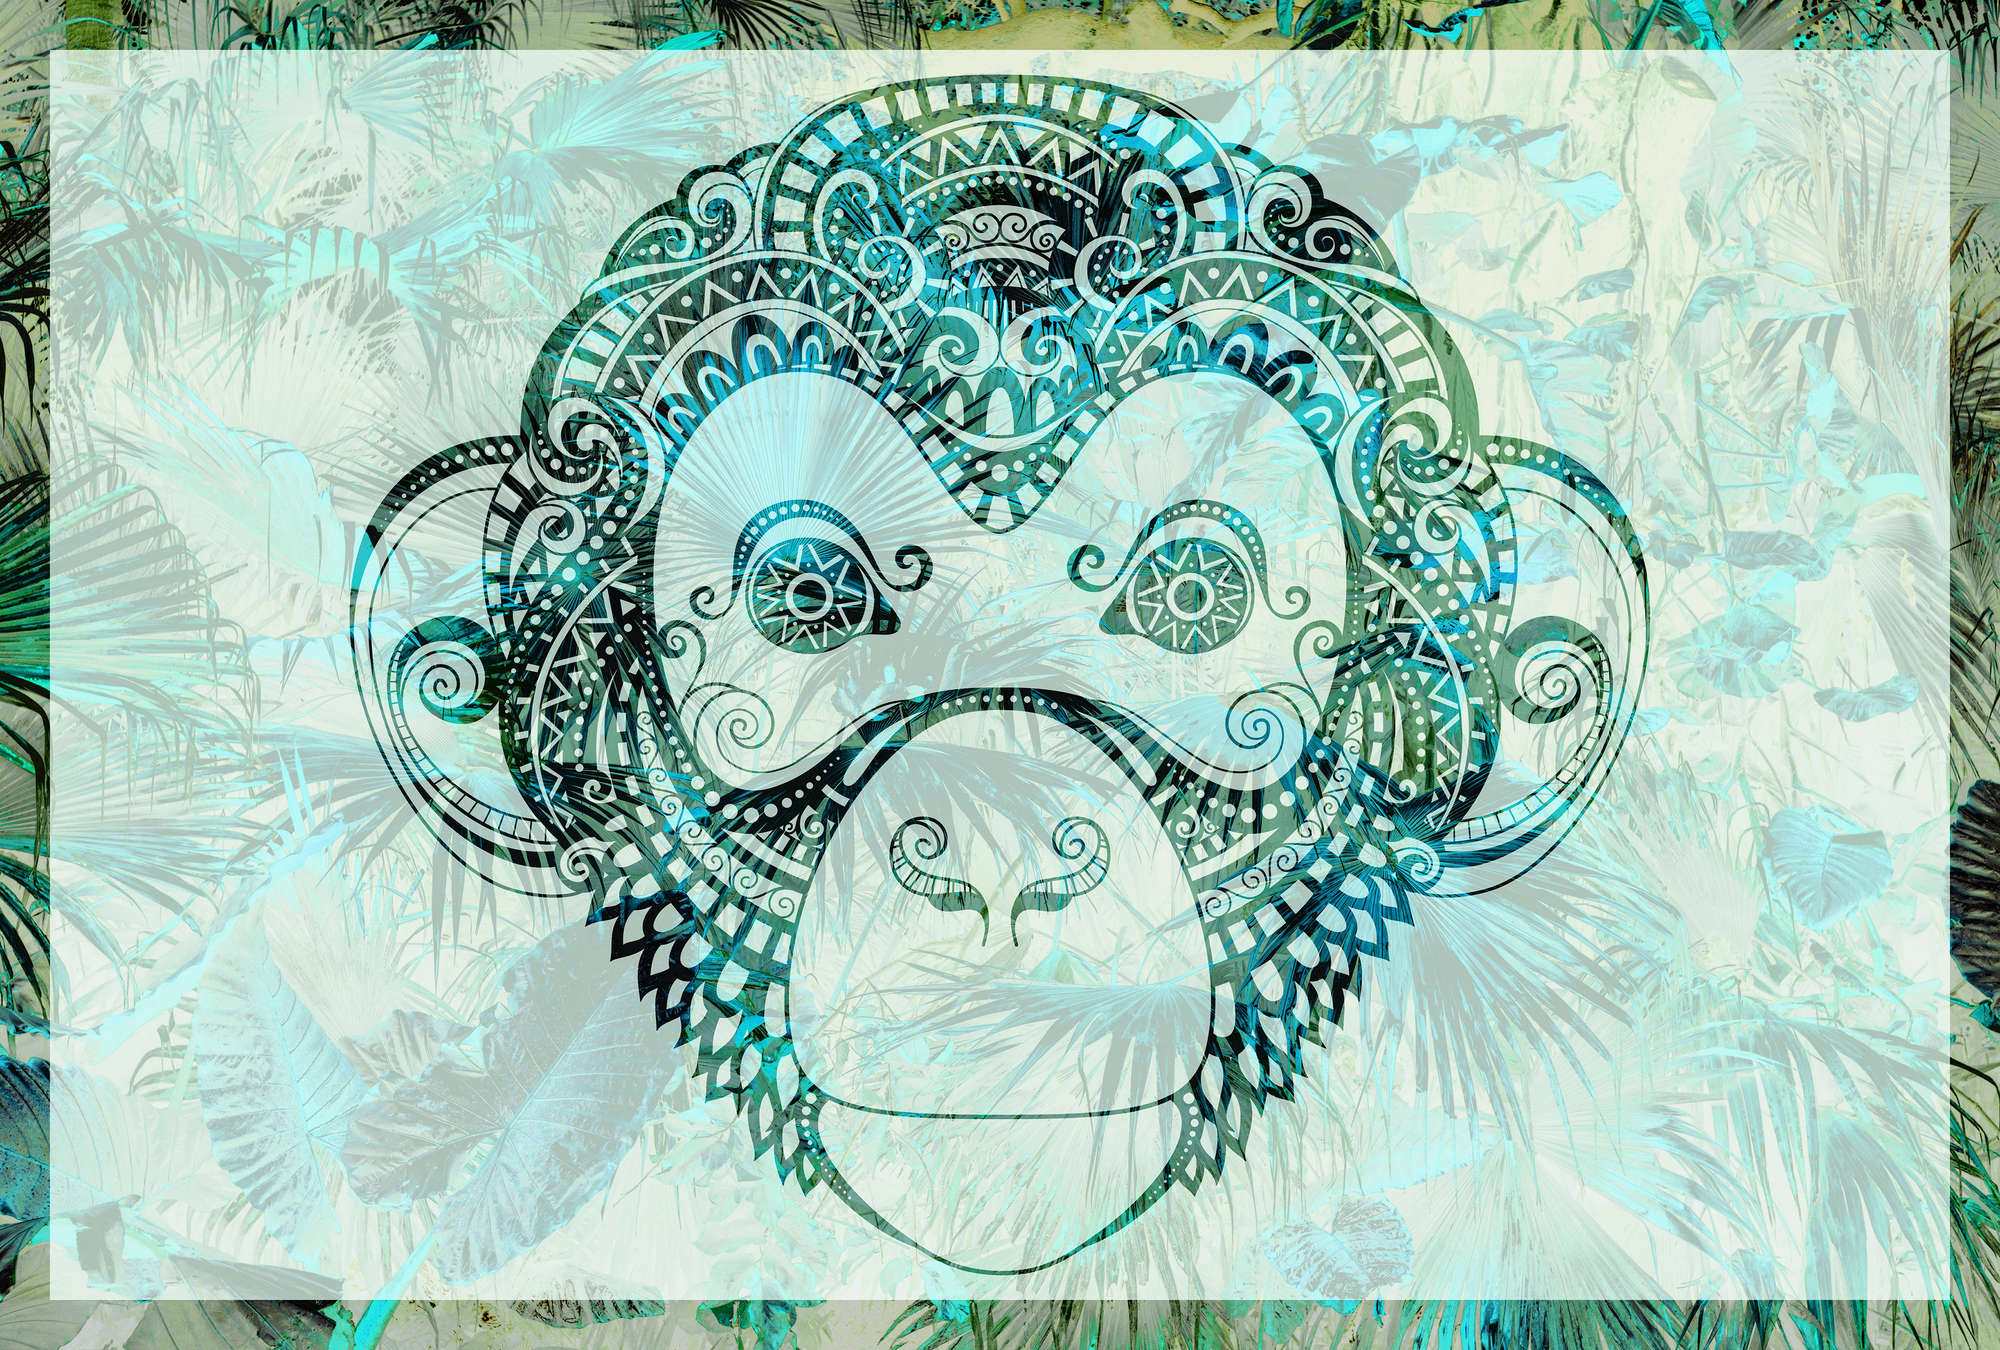             Papel pintado de diseño selvático, mono y estilo boho - verde, azul y blanco
        